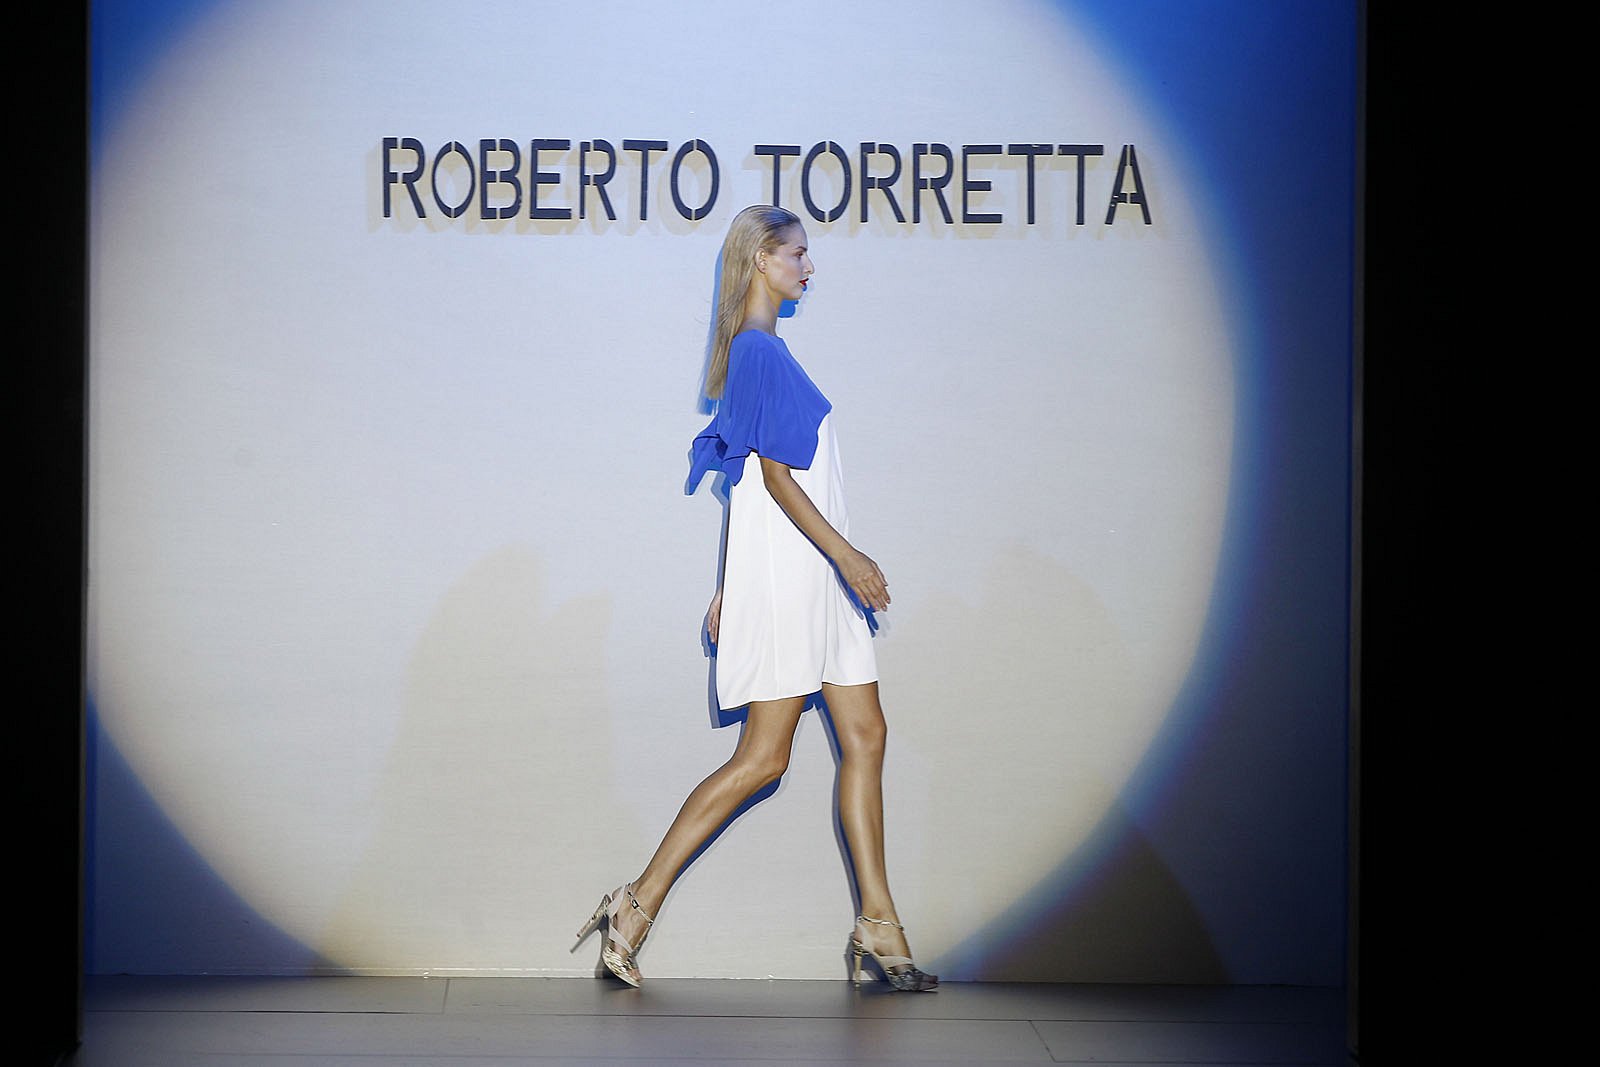 روبرتو توريتا [Roberto Torretta] ربيع-صيف 2012 - ملابس جاهزة - 1